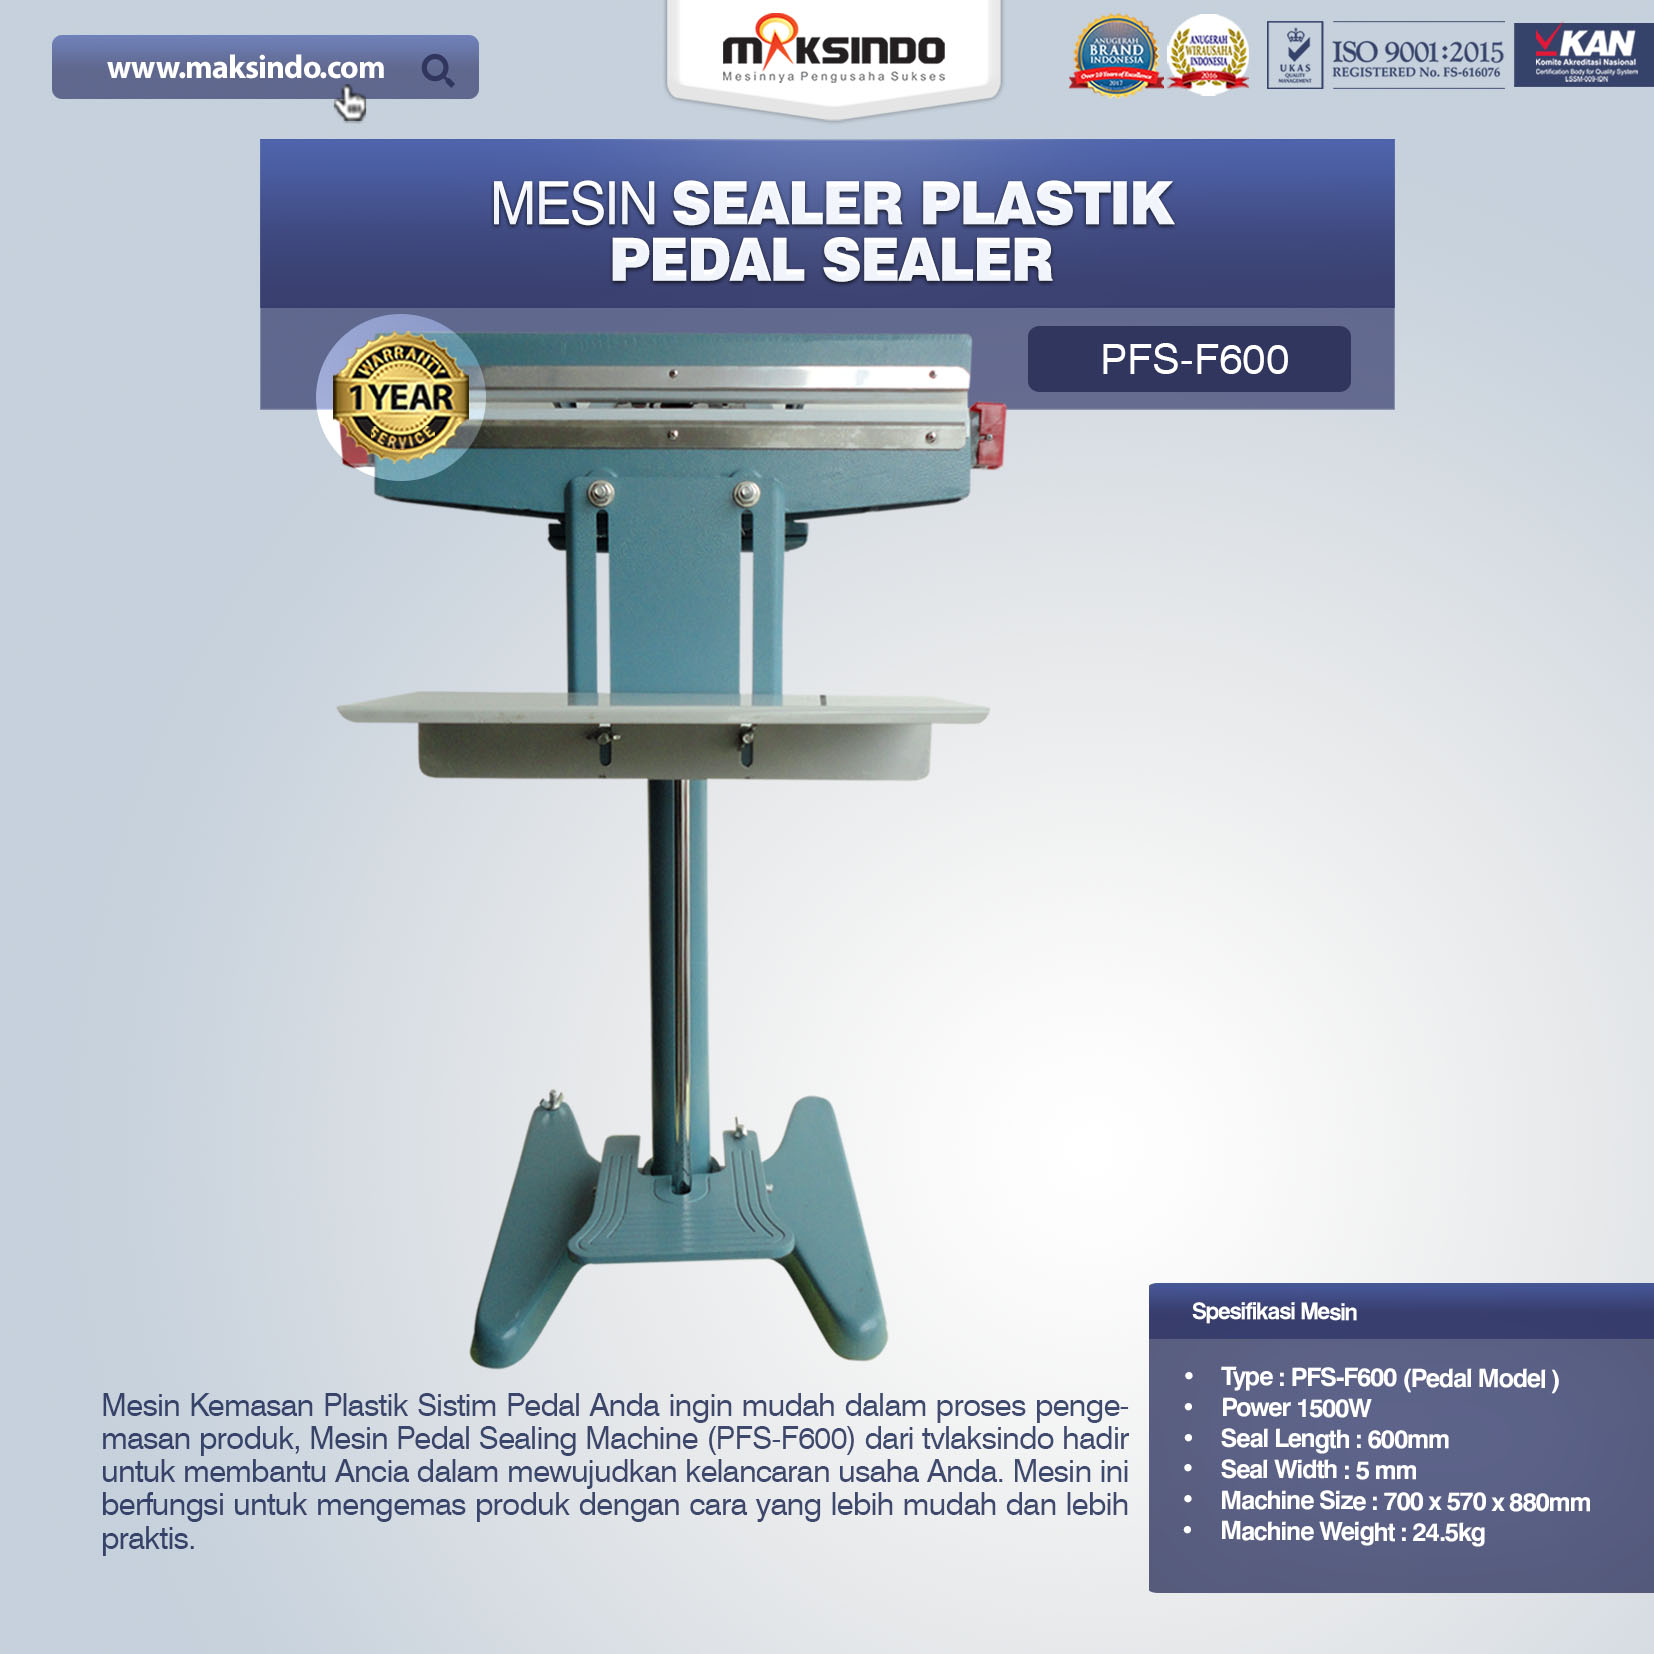 Jual Pedal Sealing Machine (PFS-F600) Di Palembang